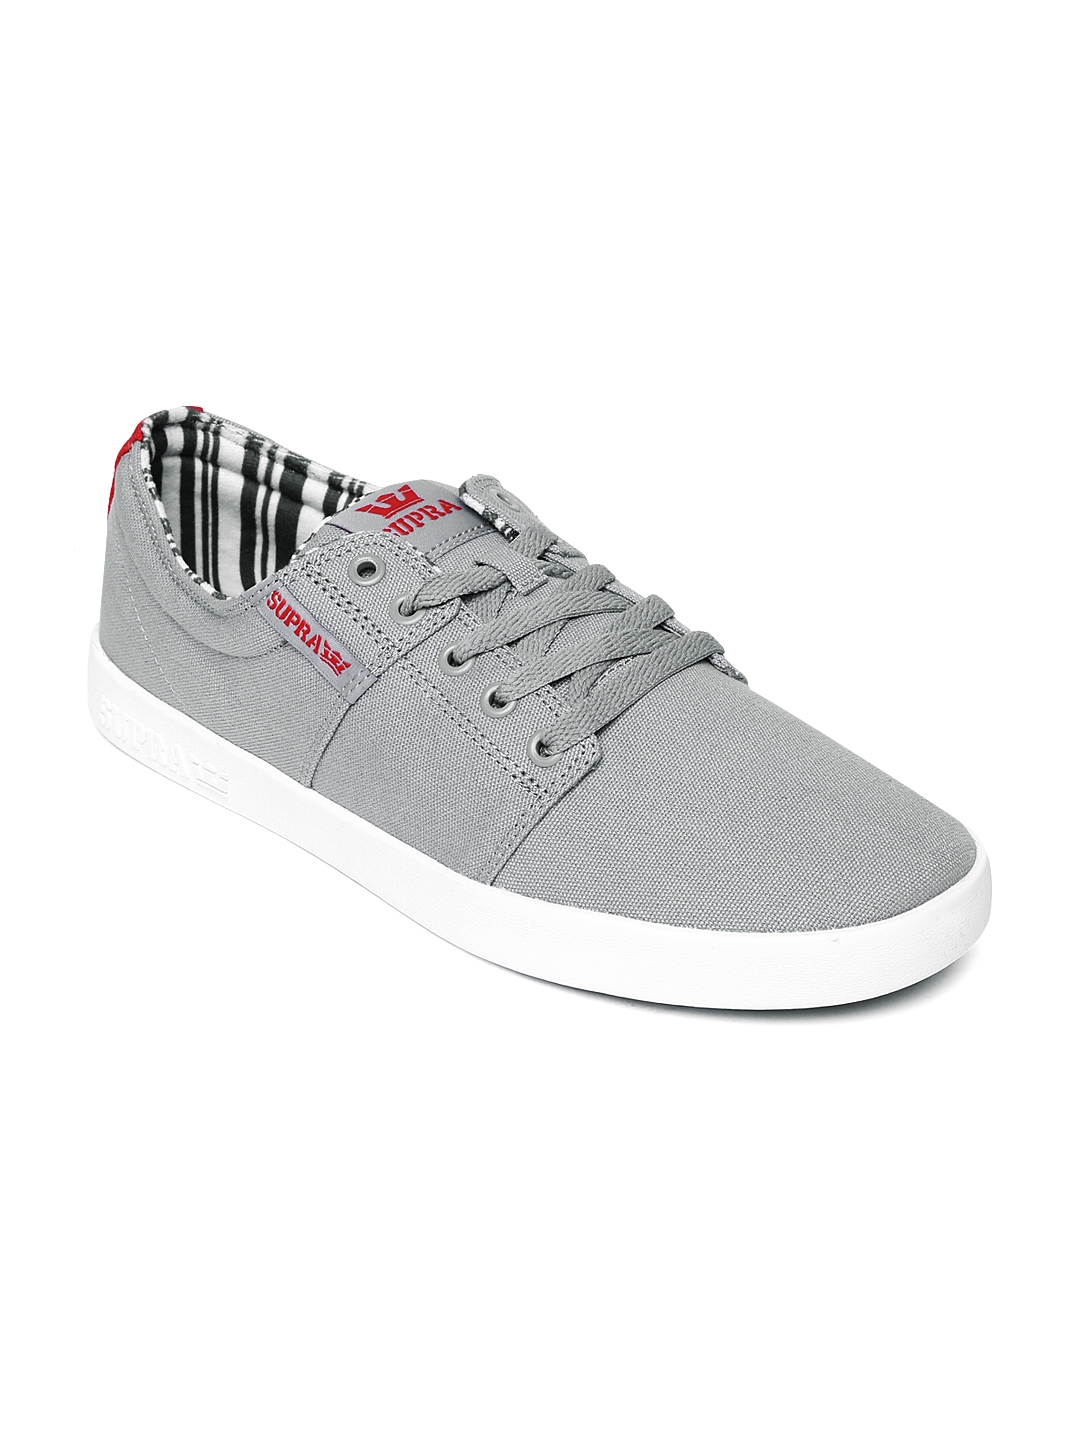 supra grey sneakers